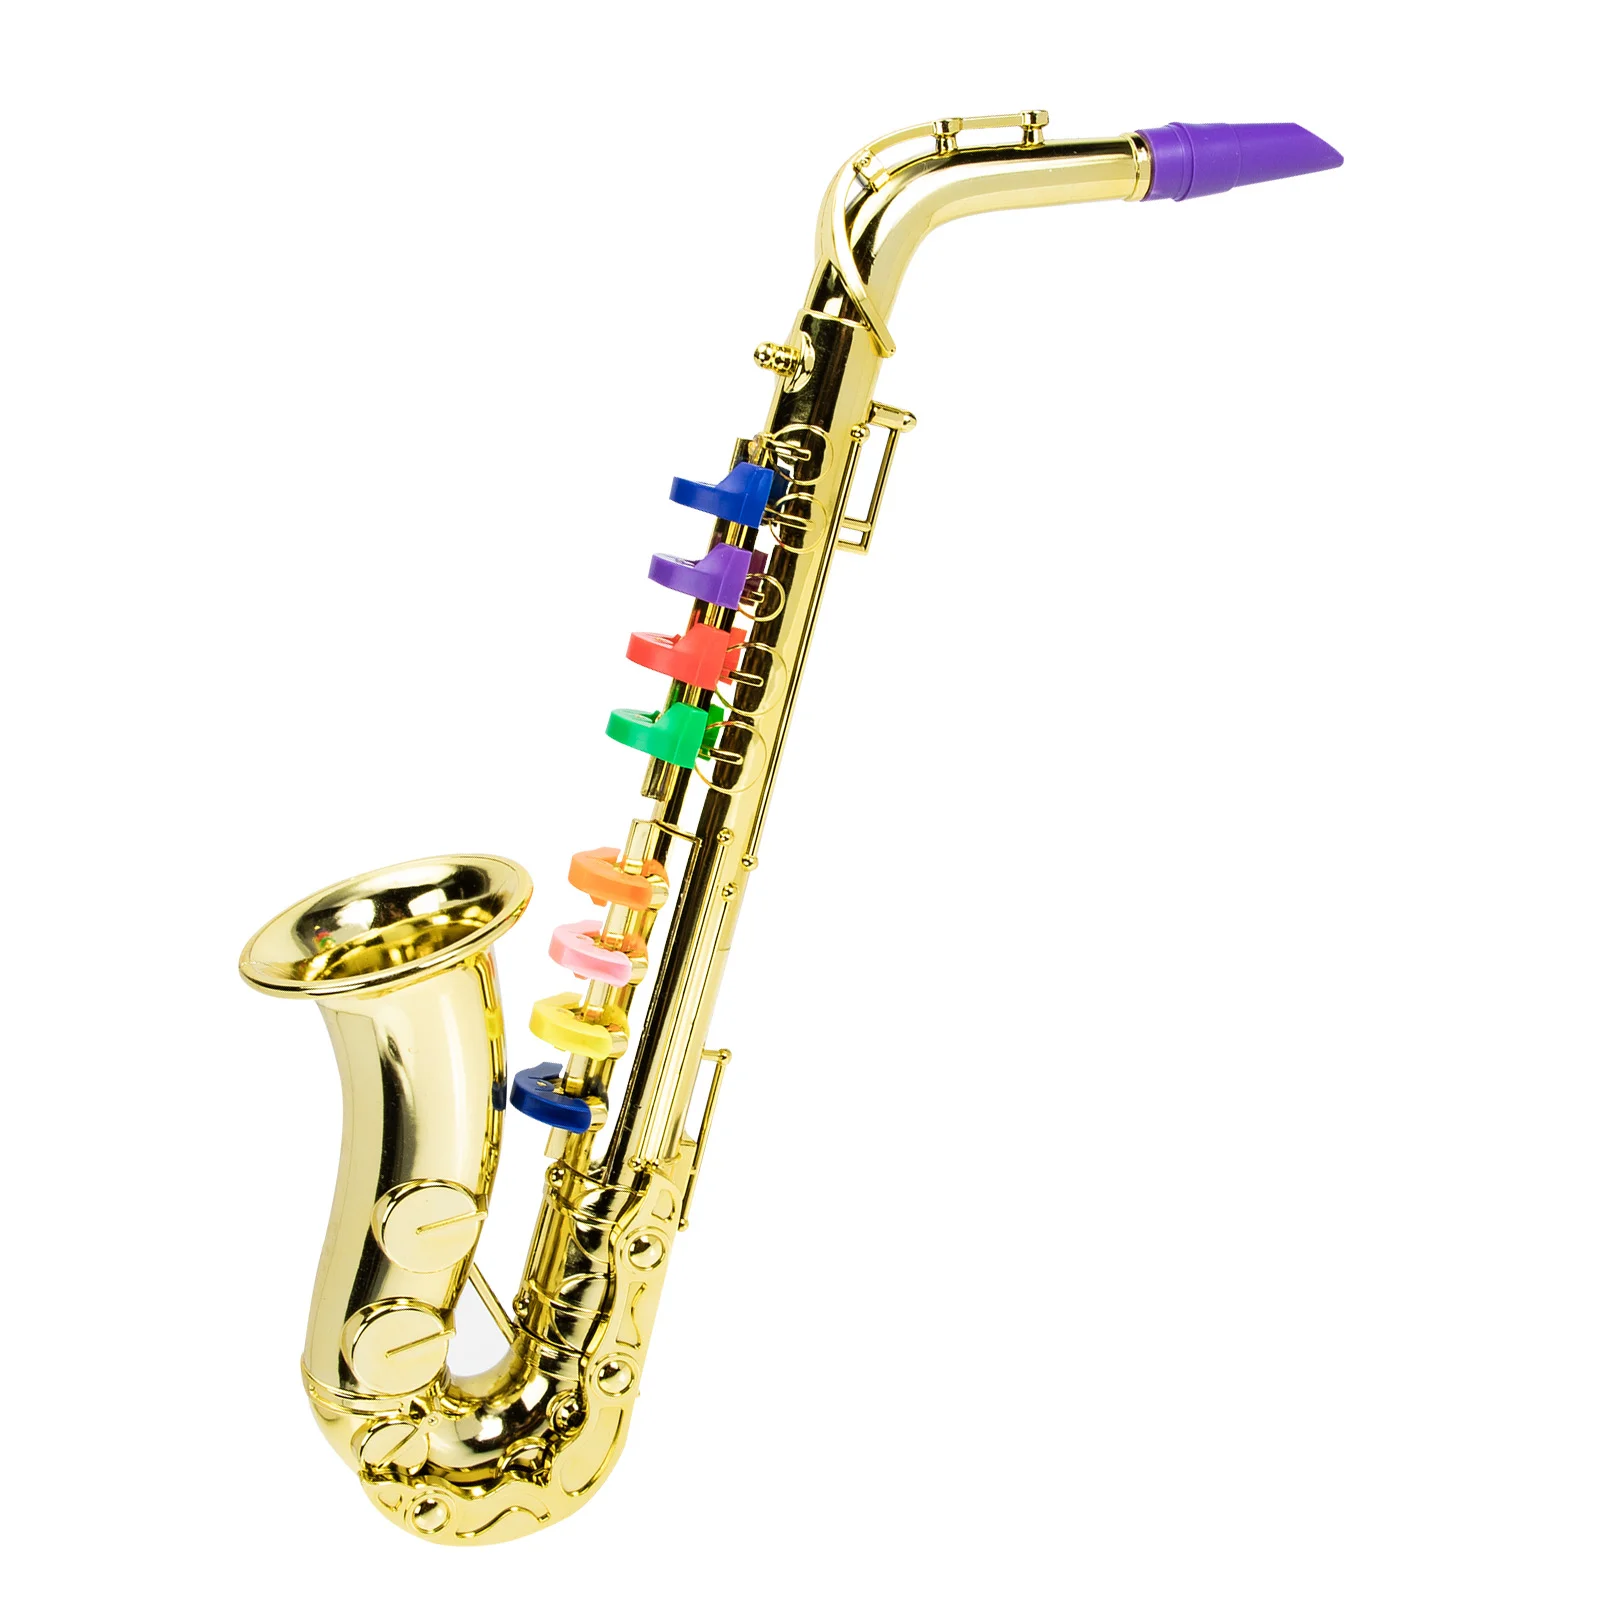 

Имитация саксофона, игрушка, декоративный саксофон, игрушка для детей, играющий в музыкальный инструмент